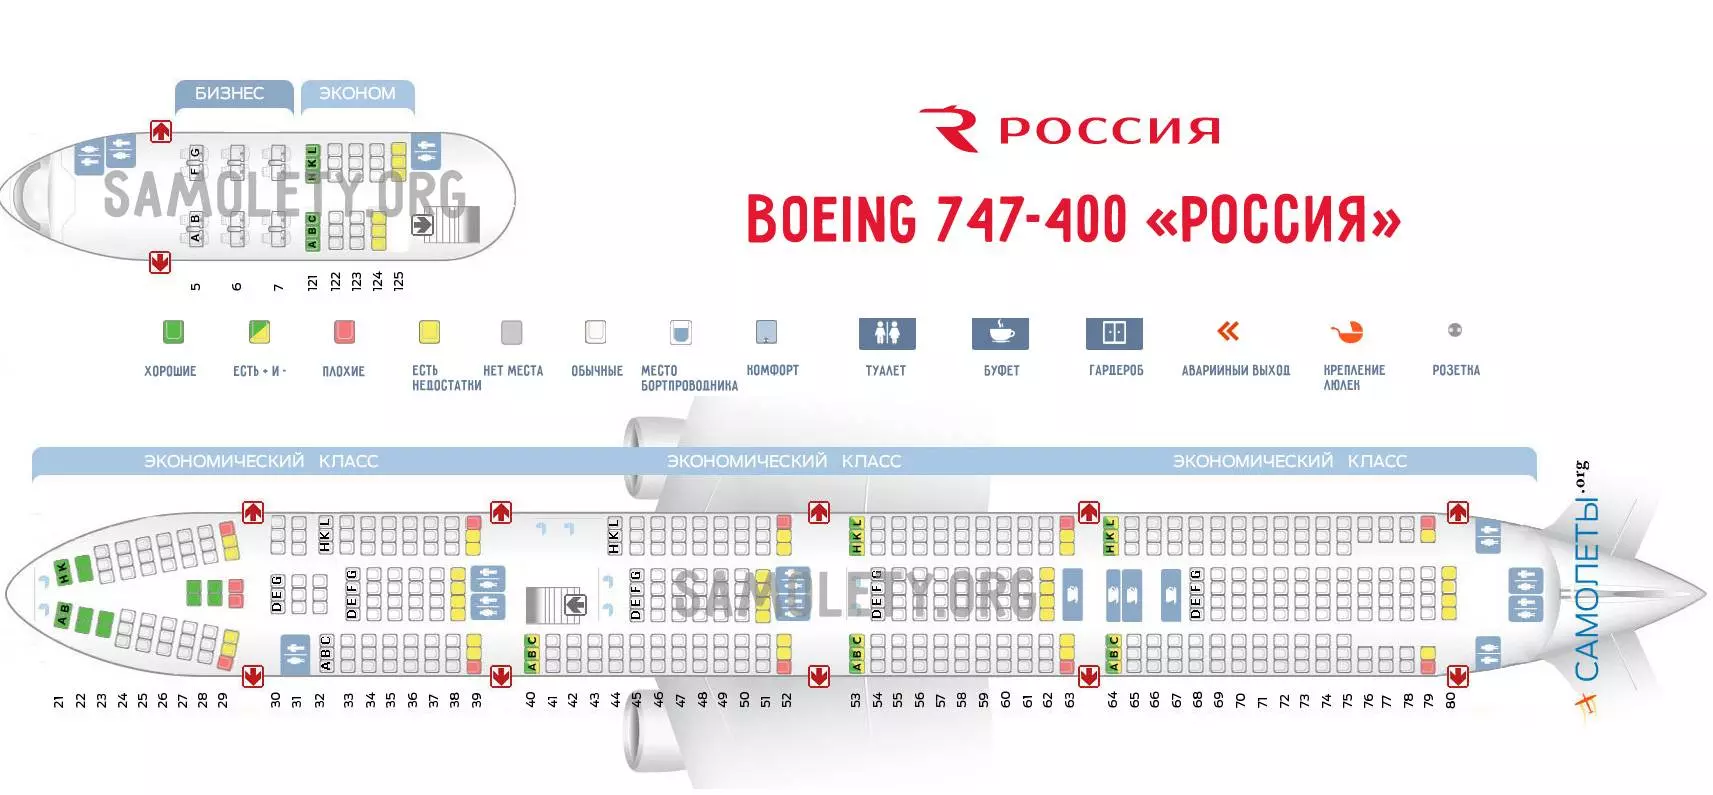 Авиапарк авиакомпании россия какие самолеты у компании фото, возраст